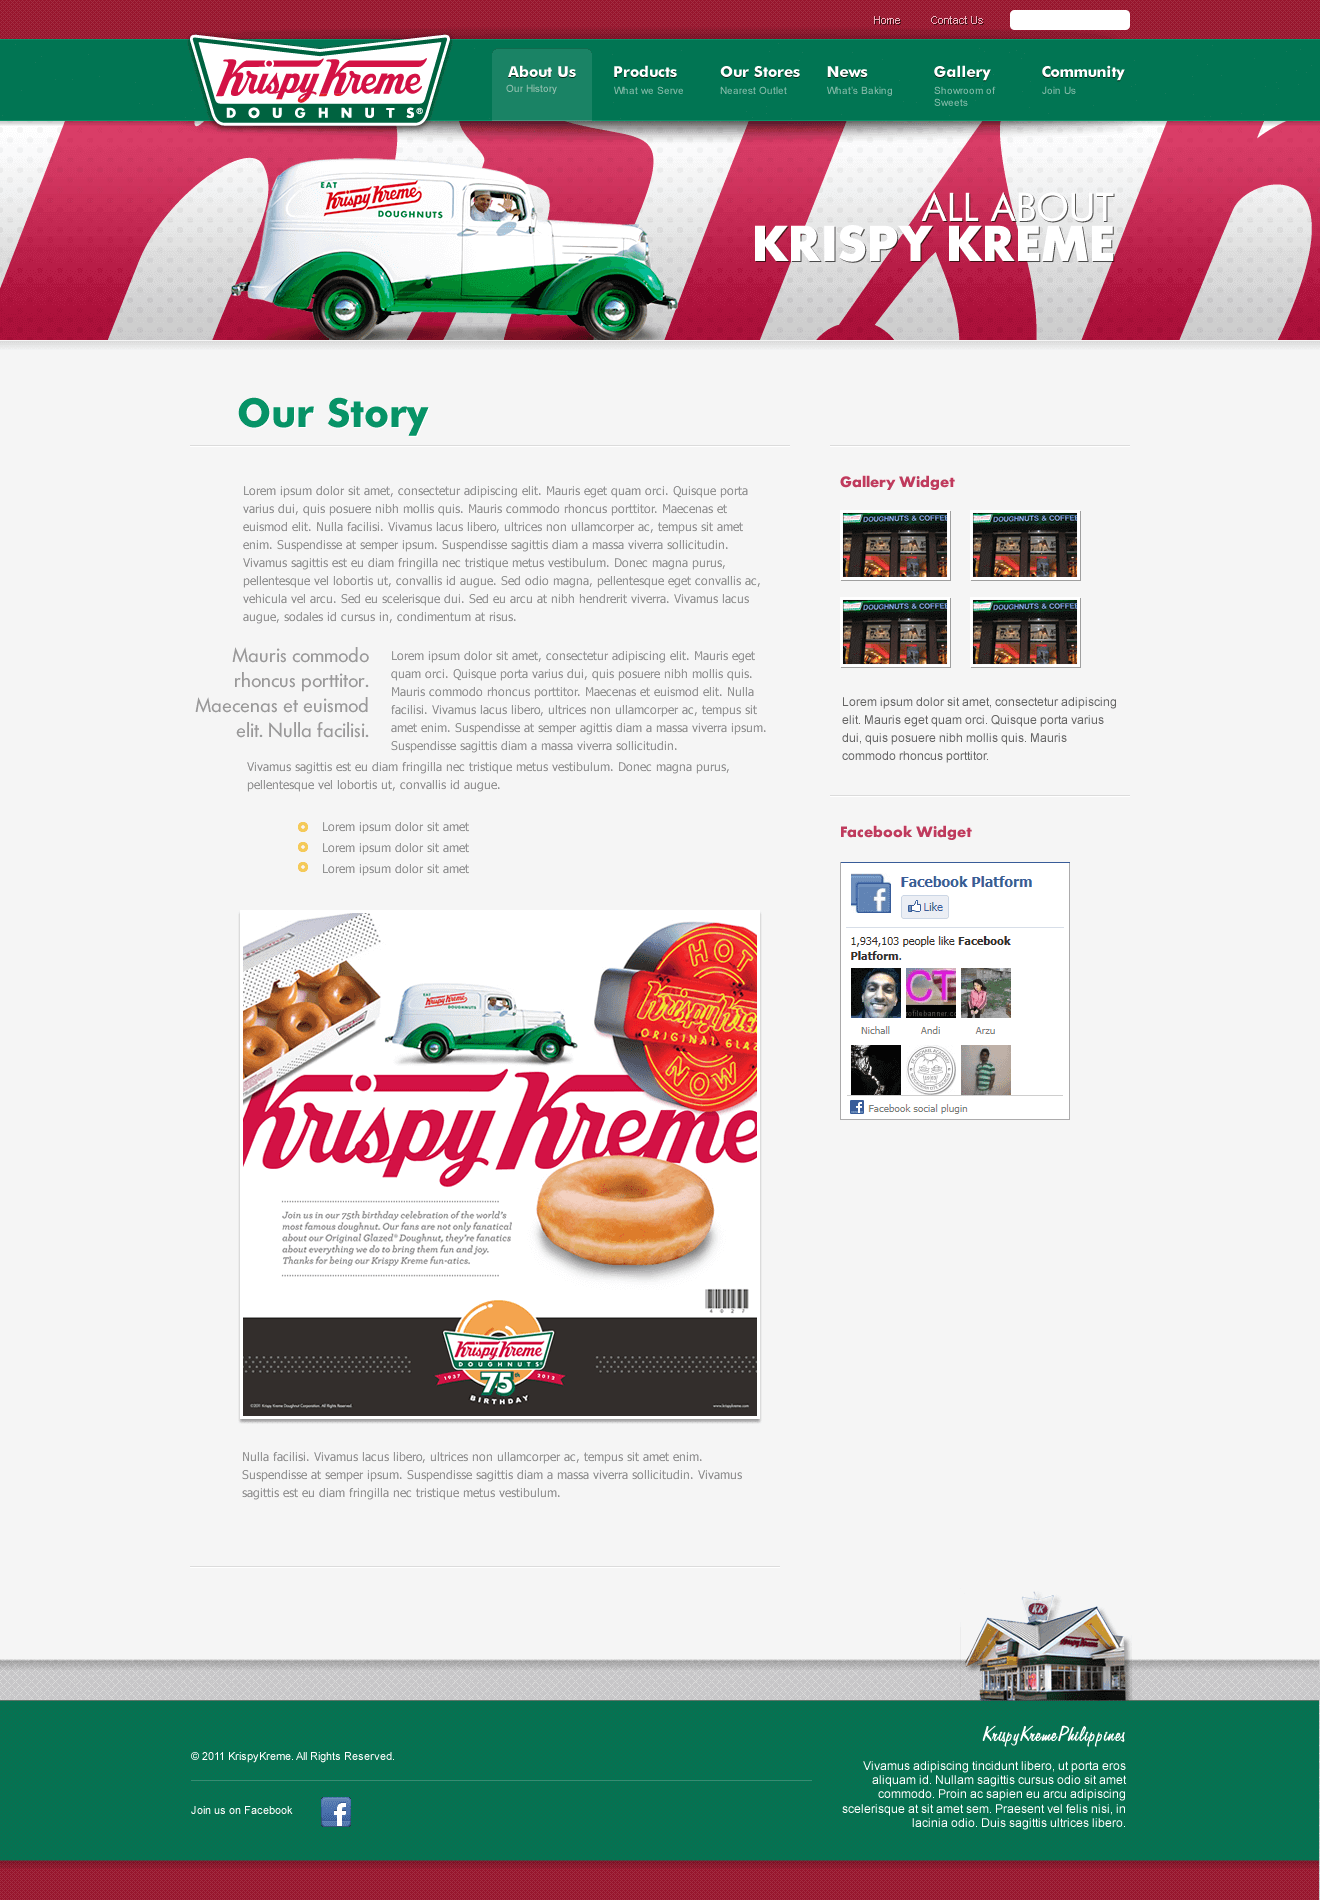 Krispy Kreme: about